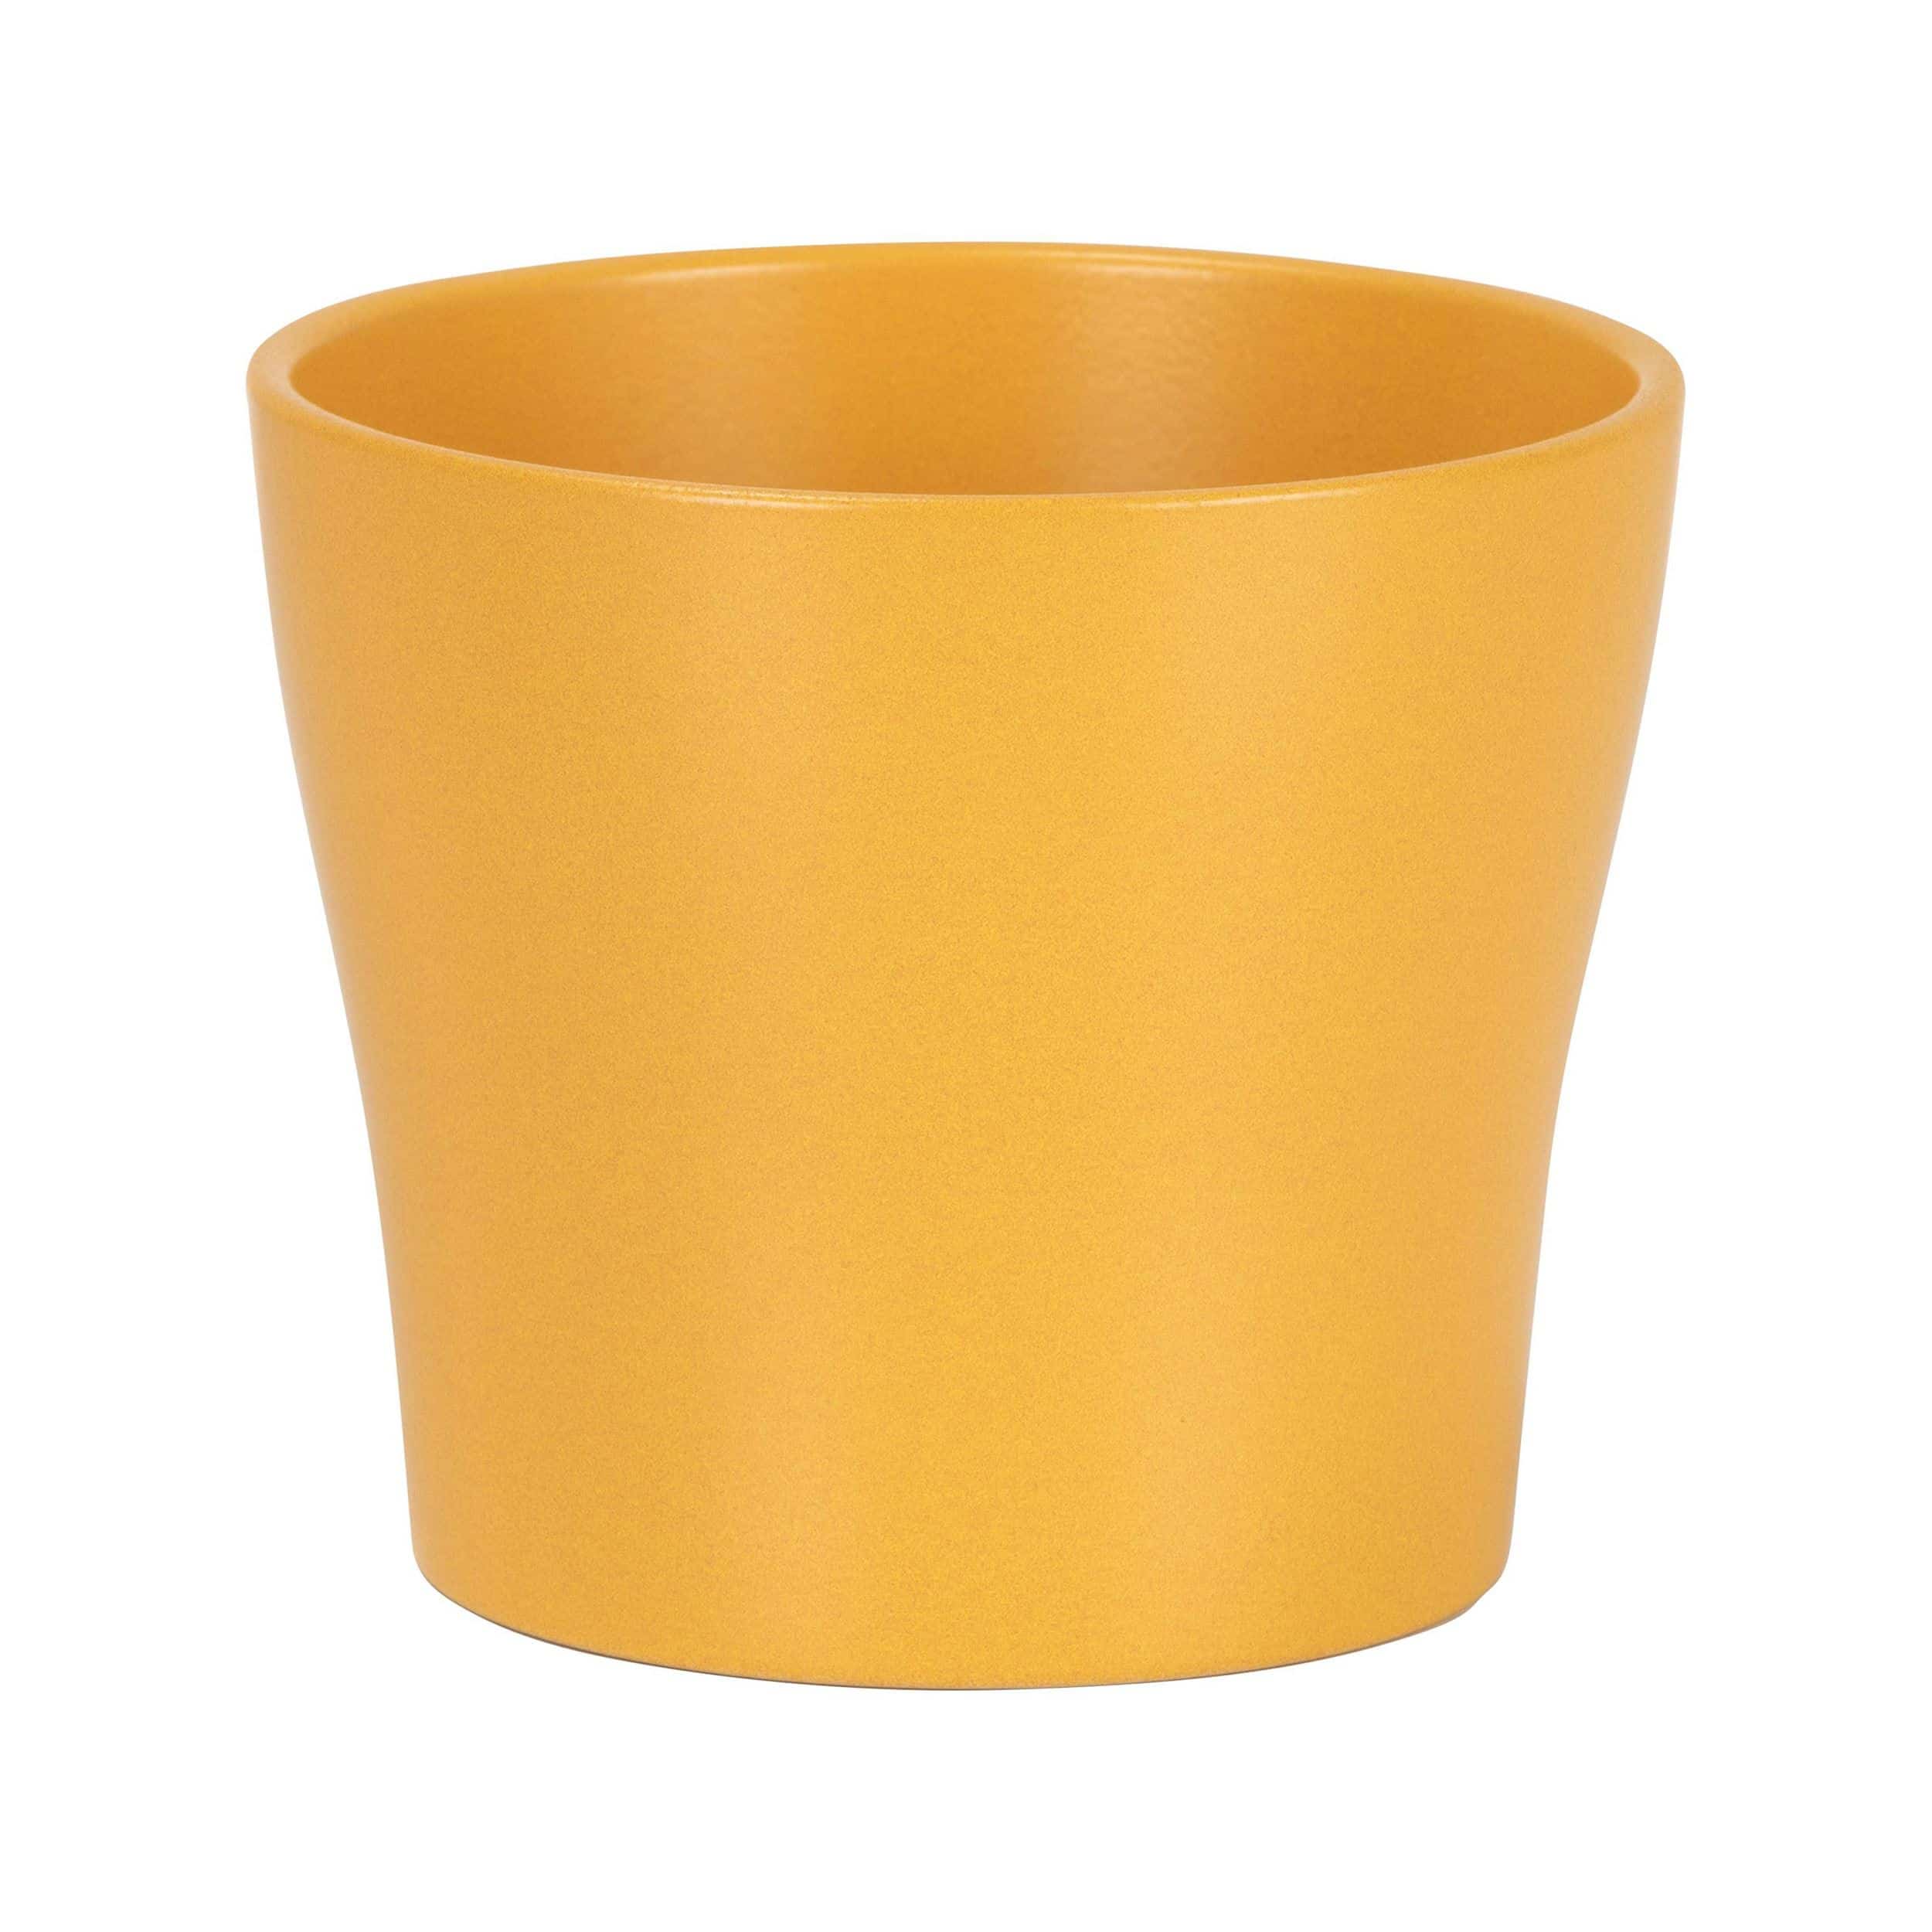 Keramik-Blumentopf 808 D21 cm curcuma